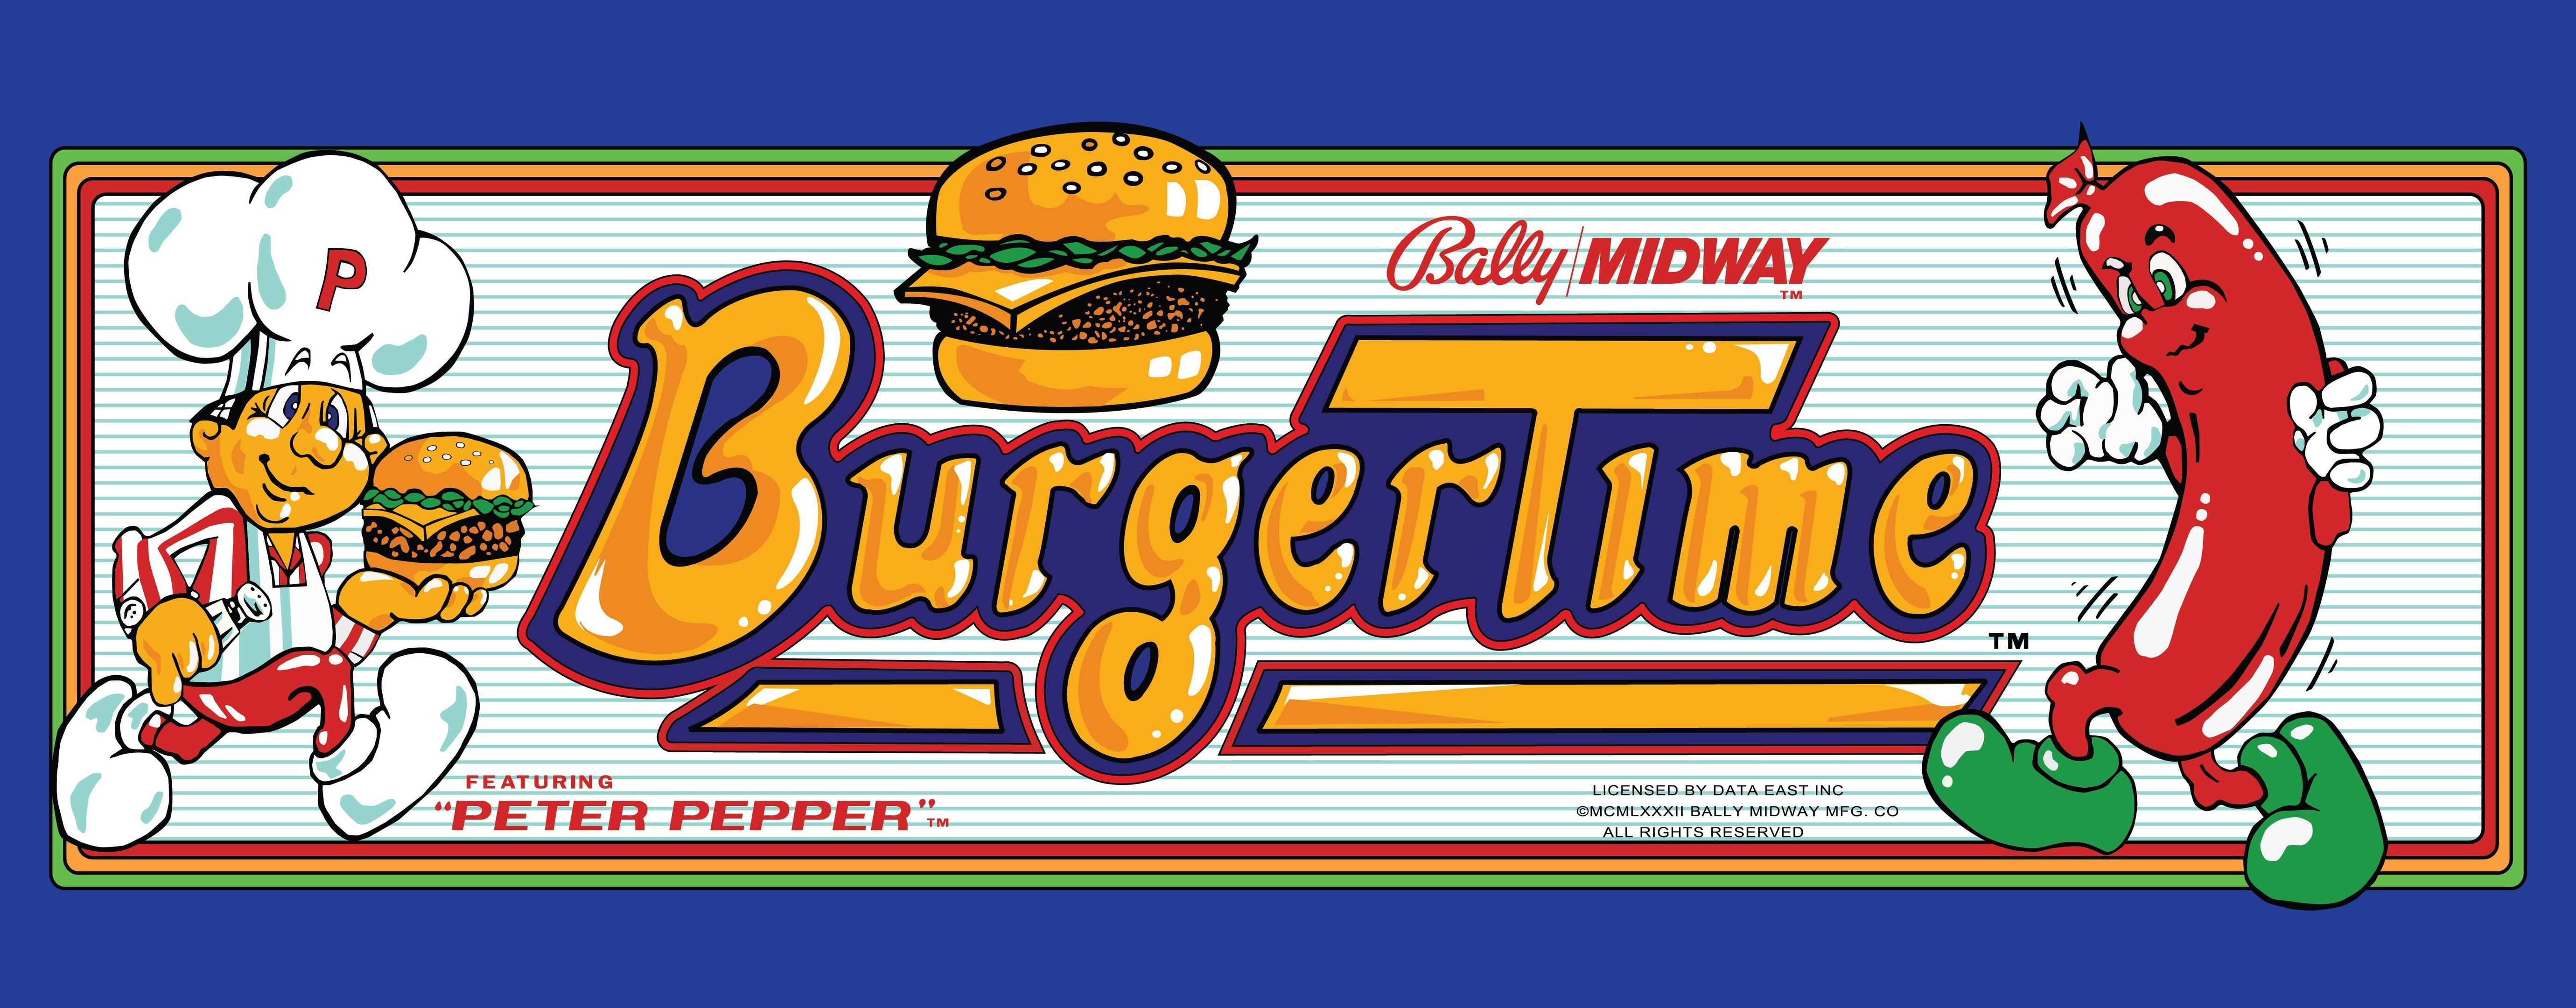 Burger Time #23